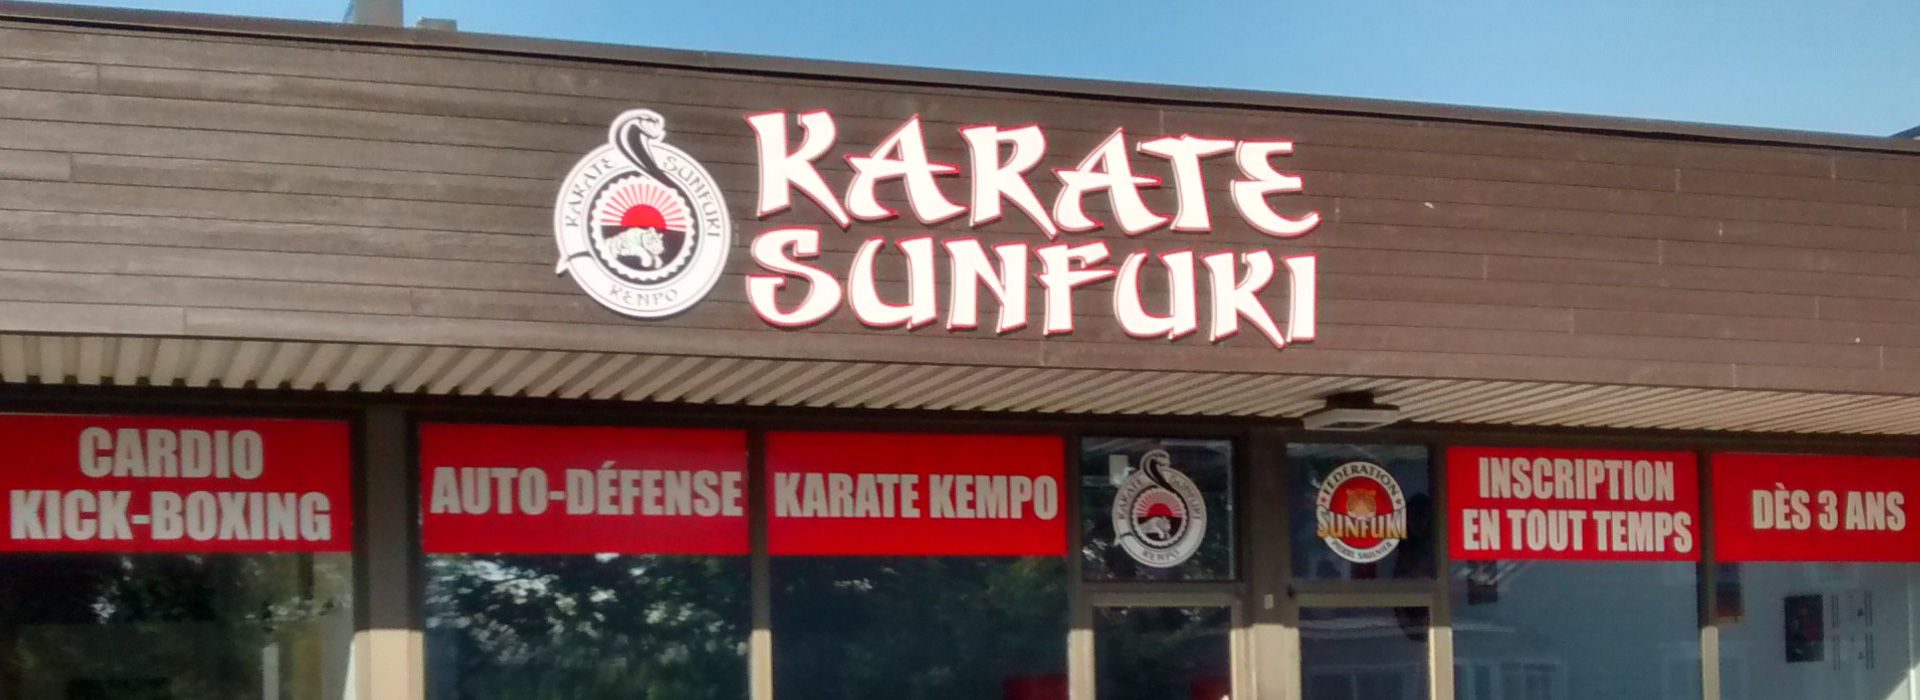 Karate Sunfuki | JB Enseignes création et fabrication d'enseignes